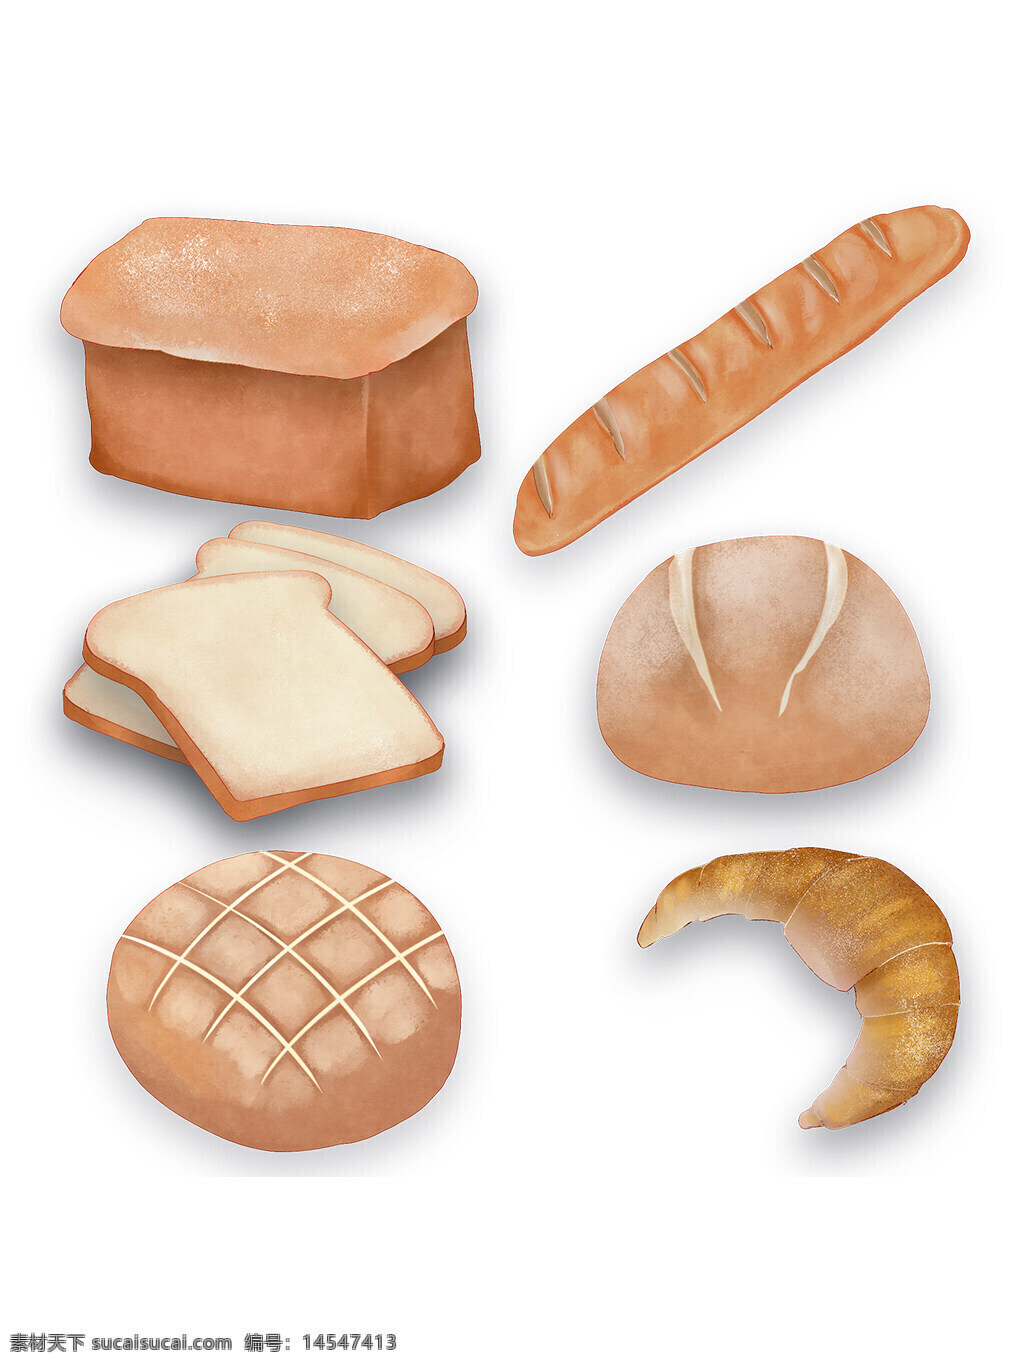 面包 欧包 面点 手绘面包 美食 西餐 面包的 法棍 菠萝包 牛角包 面包片 圆面包 方面包